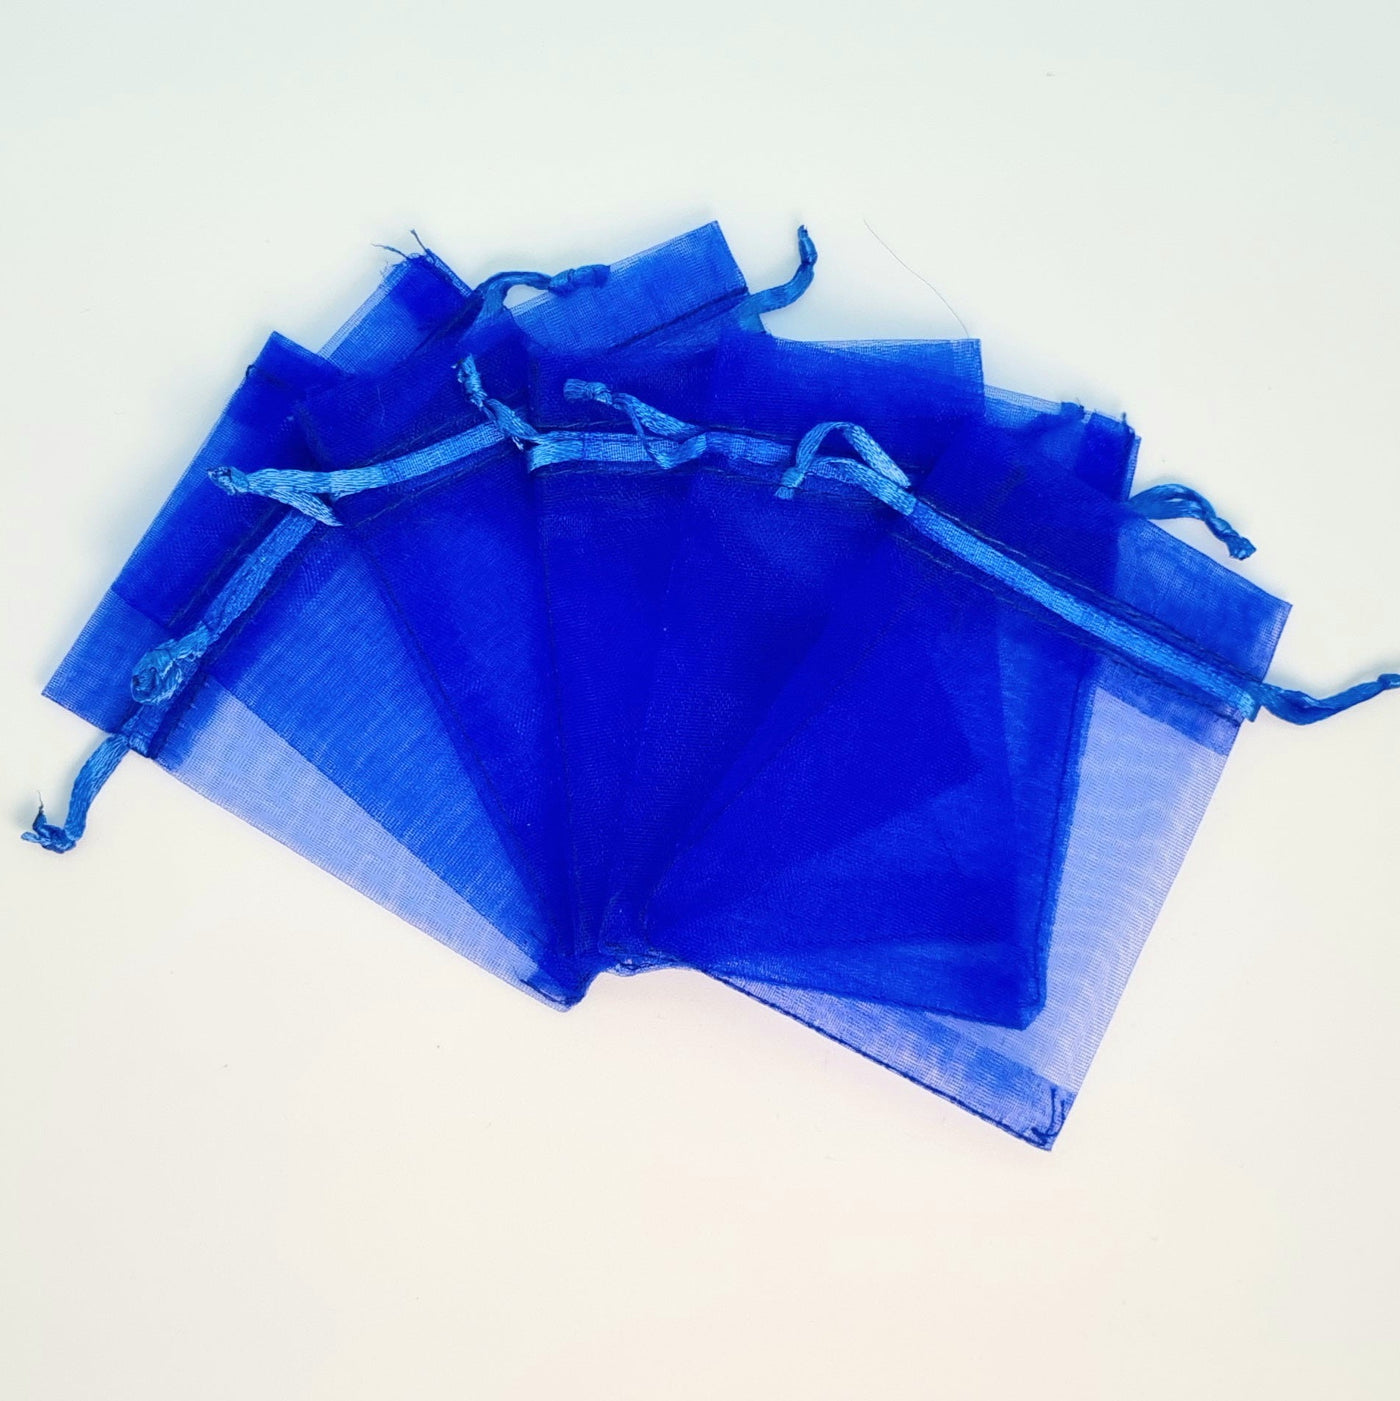 P. bolsas de organza color azul rey 7*9 cm C154